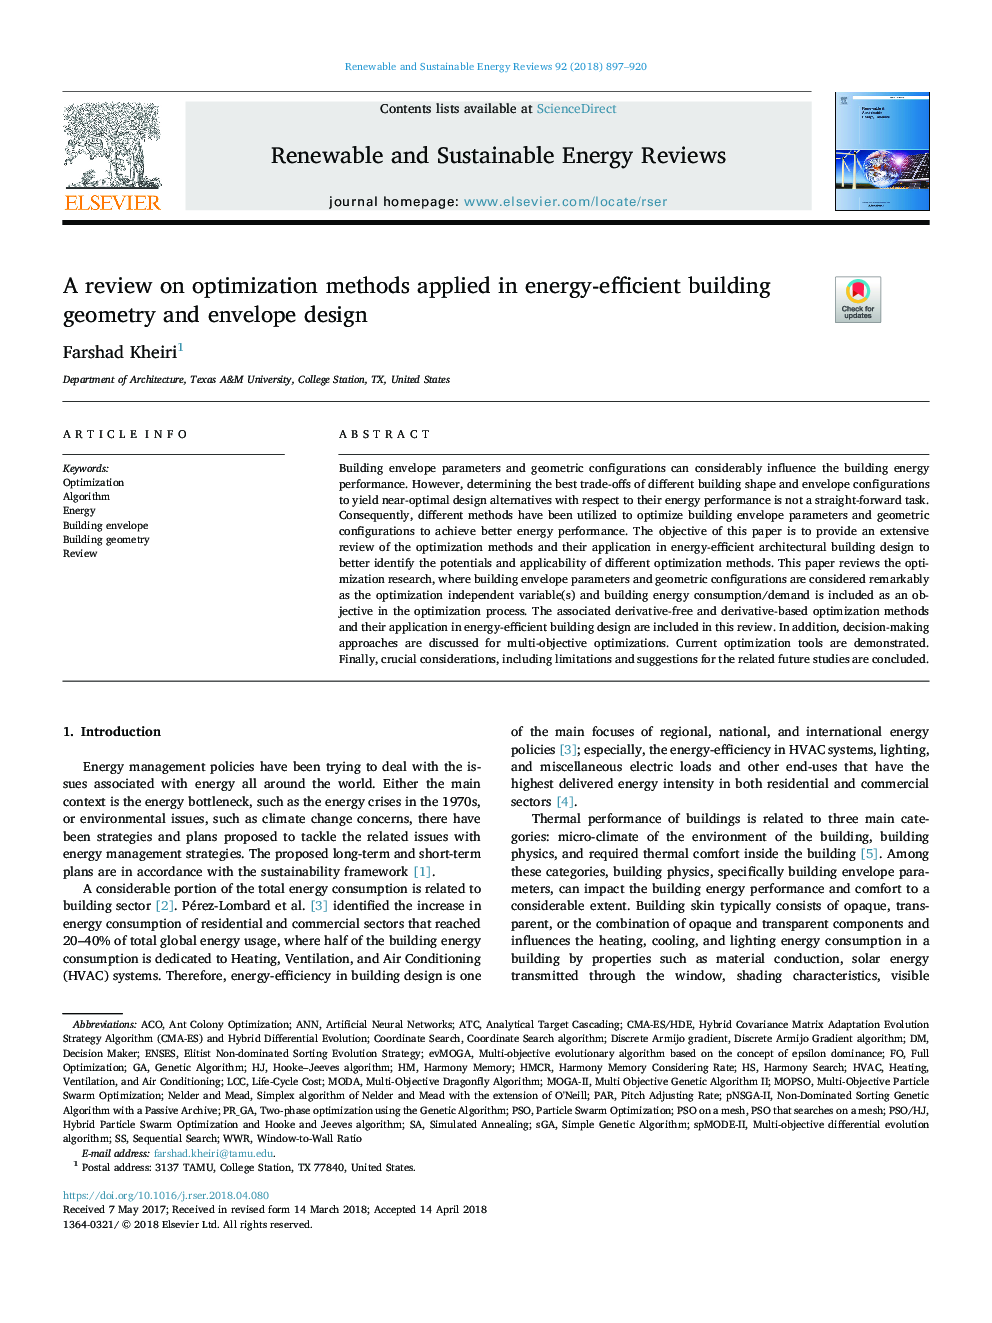 بررسی روشهای بهینه سازی در هندسه ساختمانی انرژی و طراحی پاکت 